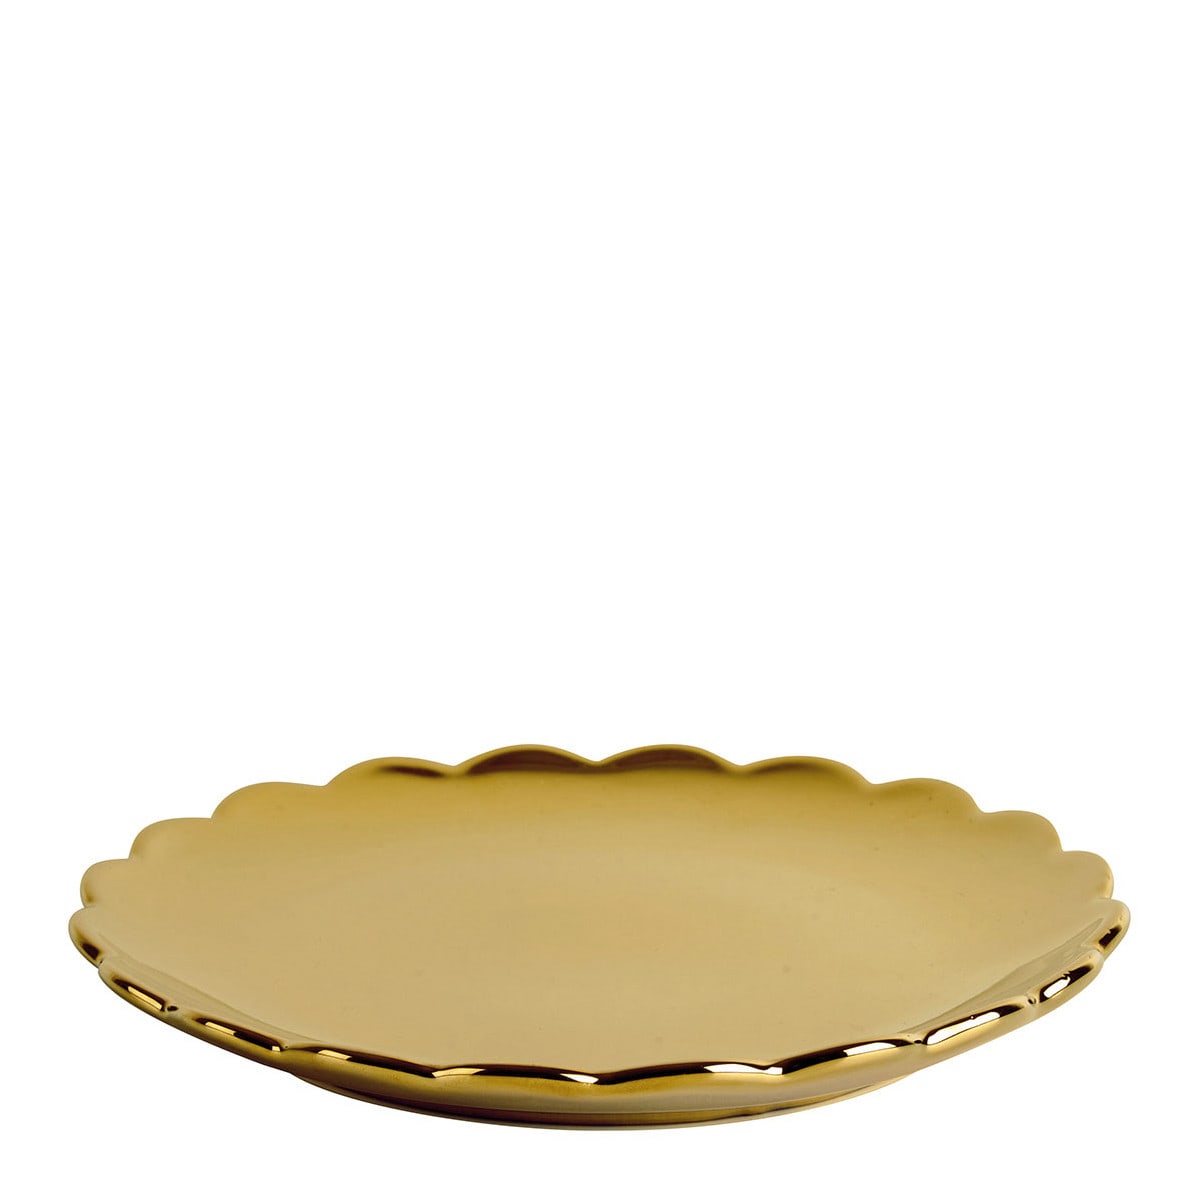 Assiette à dessert D 19 cm décor Jeanne pois doré - Assiettes - Décomania